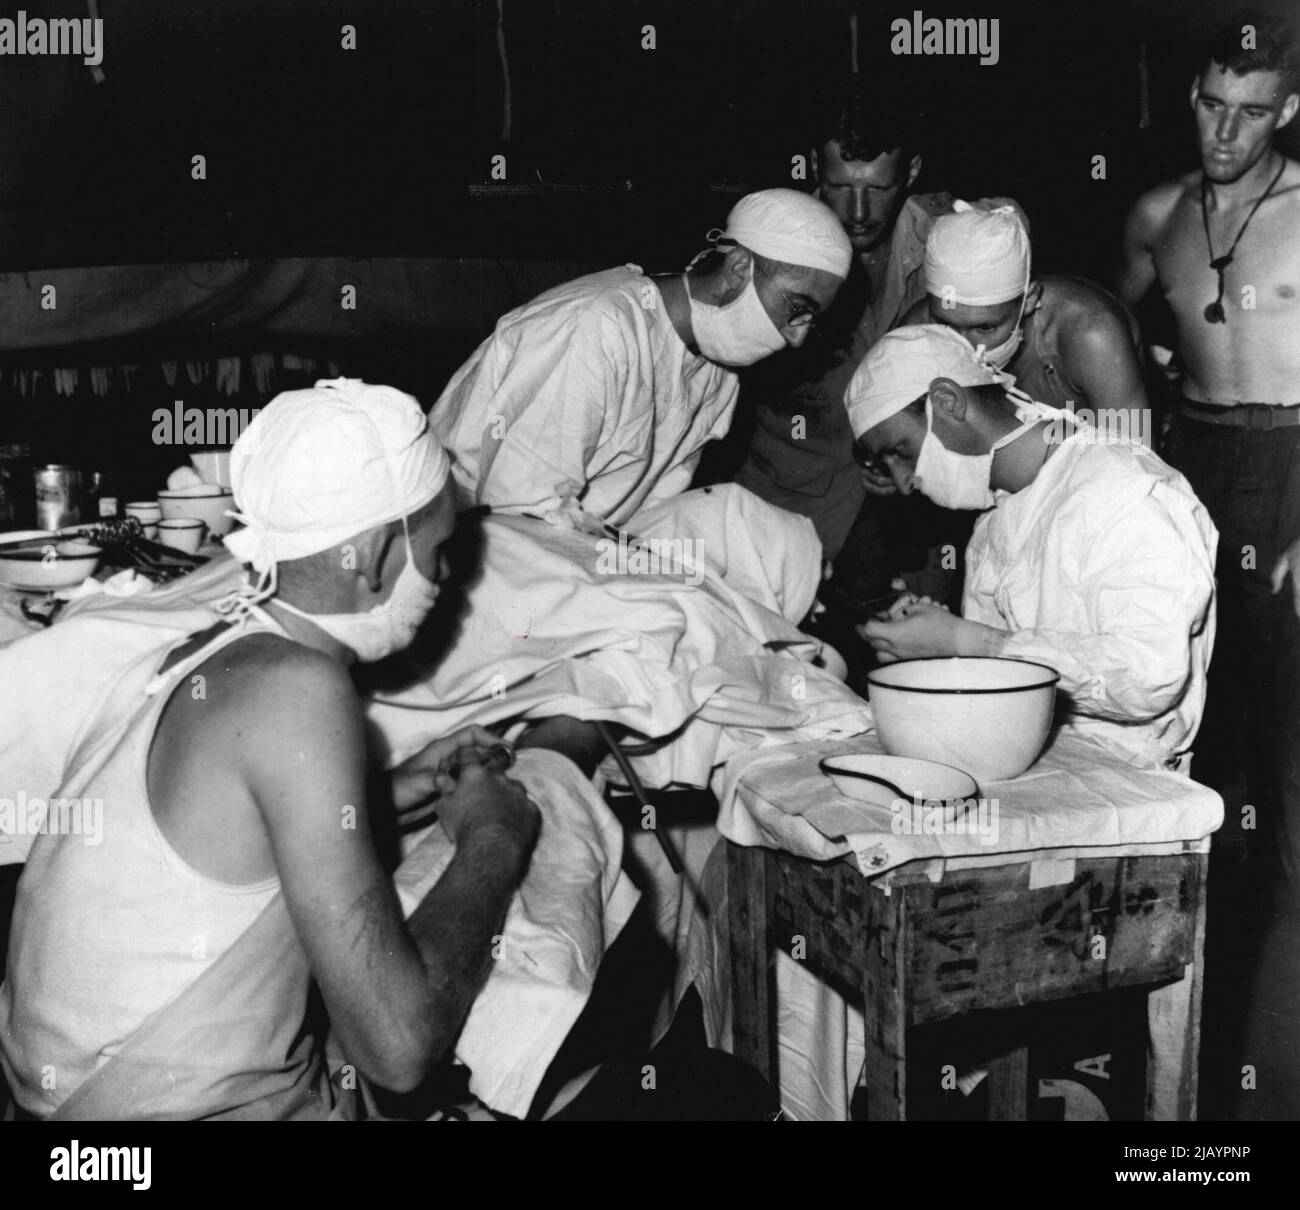 Dies ist am Hauptsitz eines mobilen OP-Teams, der vorwärtssten medizinischen Stelle im Kampfgebiet. Ein Australier, der am Kopf verletzt wurde, wird einer Operation unterzieht. Unterstützung des medizinischen Offiziers sind links nach rechts Pte. C. Bingham aus Townsville, Qld, Sgt. G. Smith von Edgecliff, N.S.W. und Pte. S. Dow von Mackay Qld. 13. Januar 1944. Stockfoto